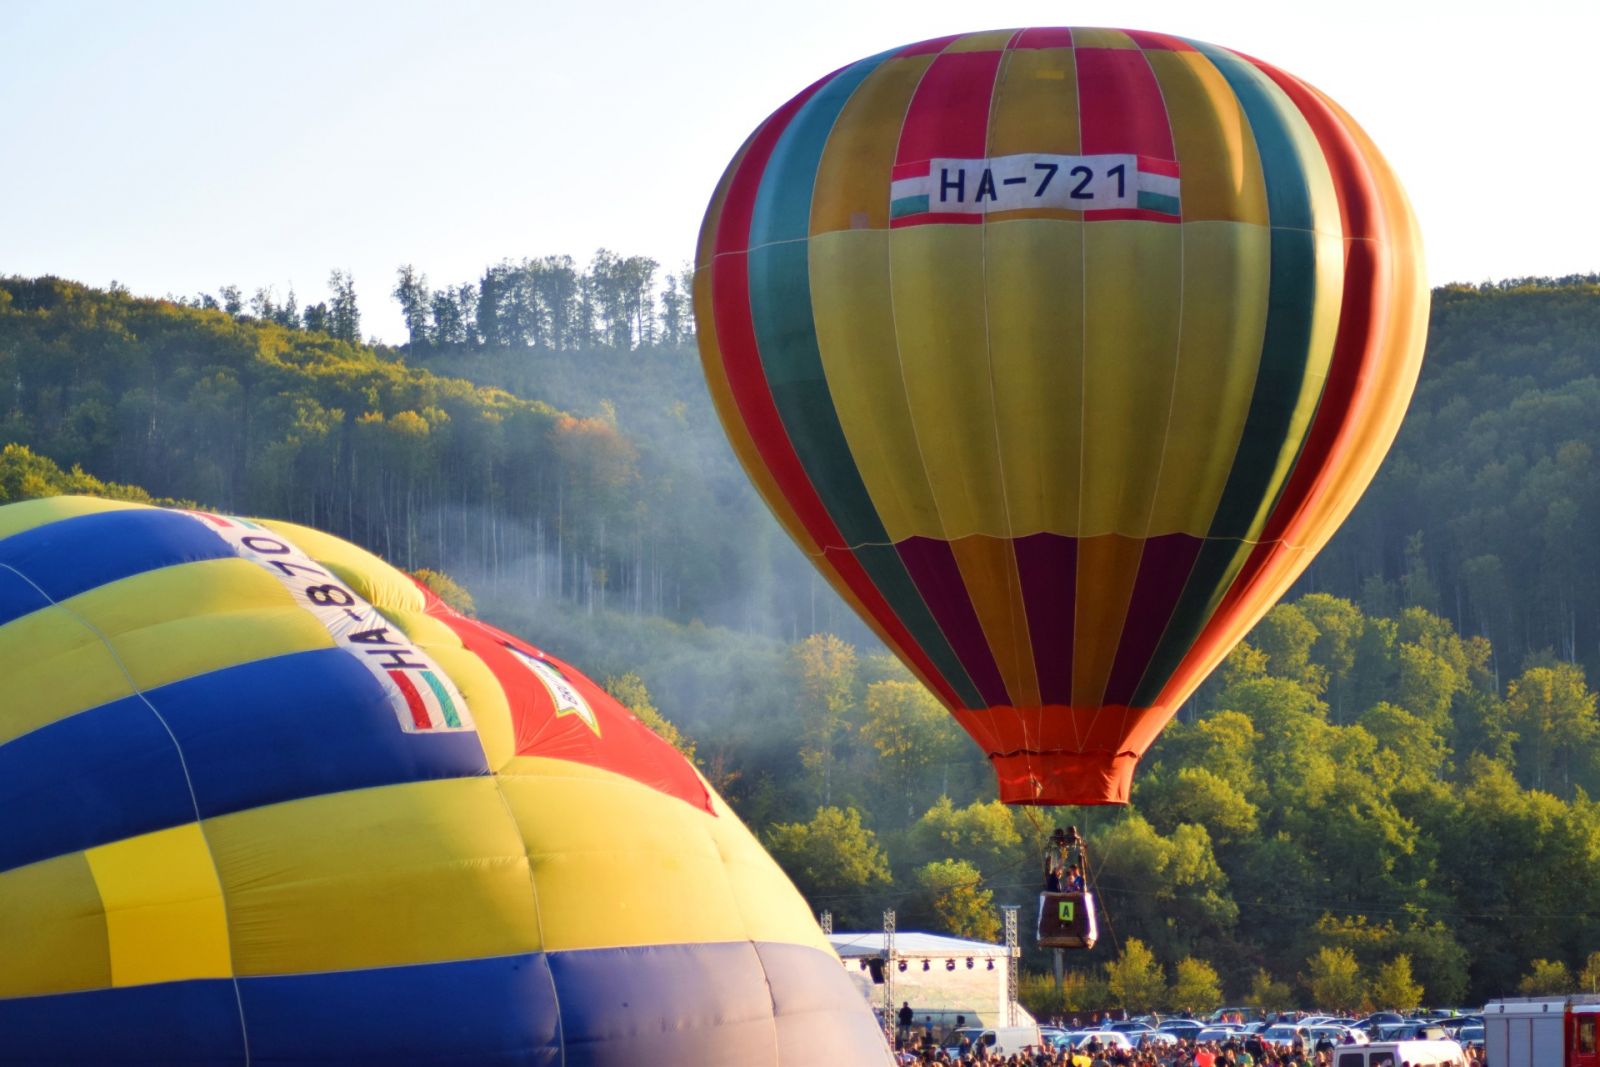 Egymást követték a hőlégballonok: egyik a másik után emelkedett a levegőbe, a bátrabb résztvevők pedig felszállhattak velük a magasba.